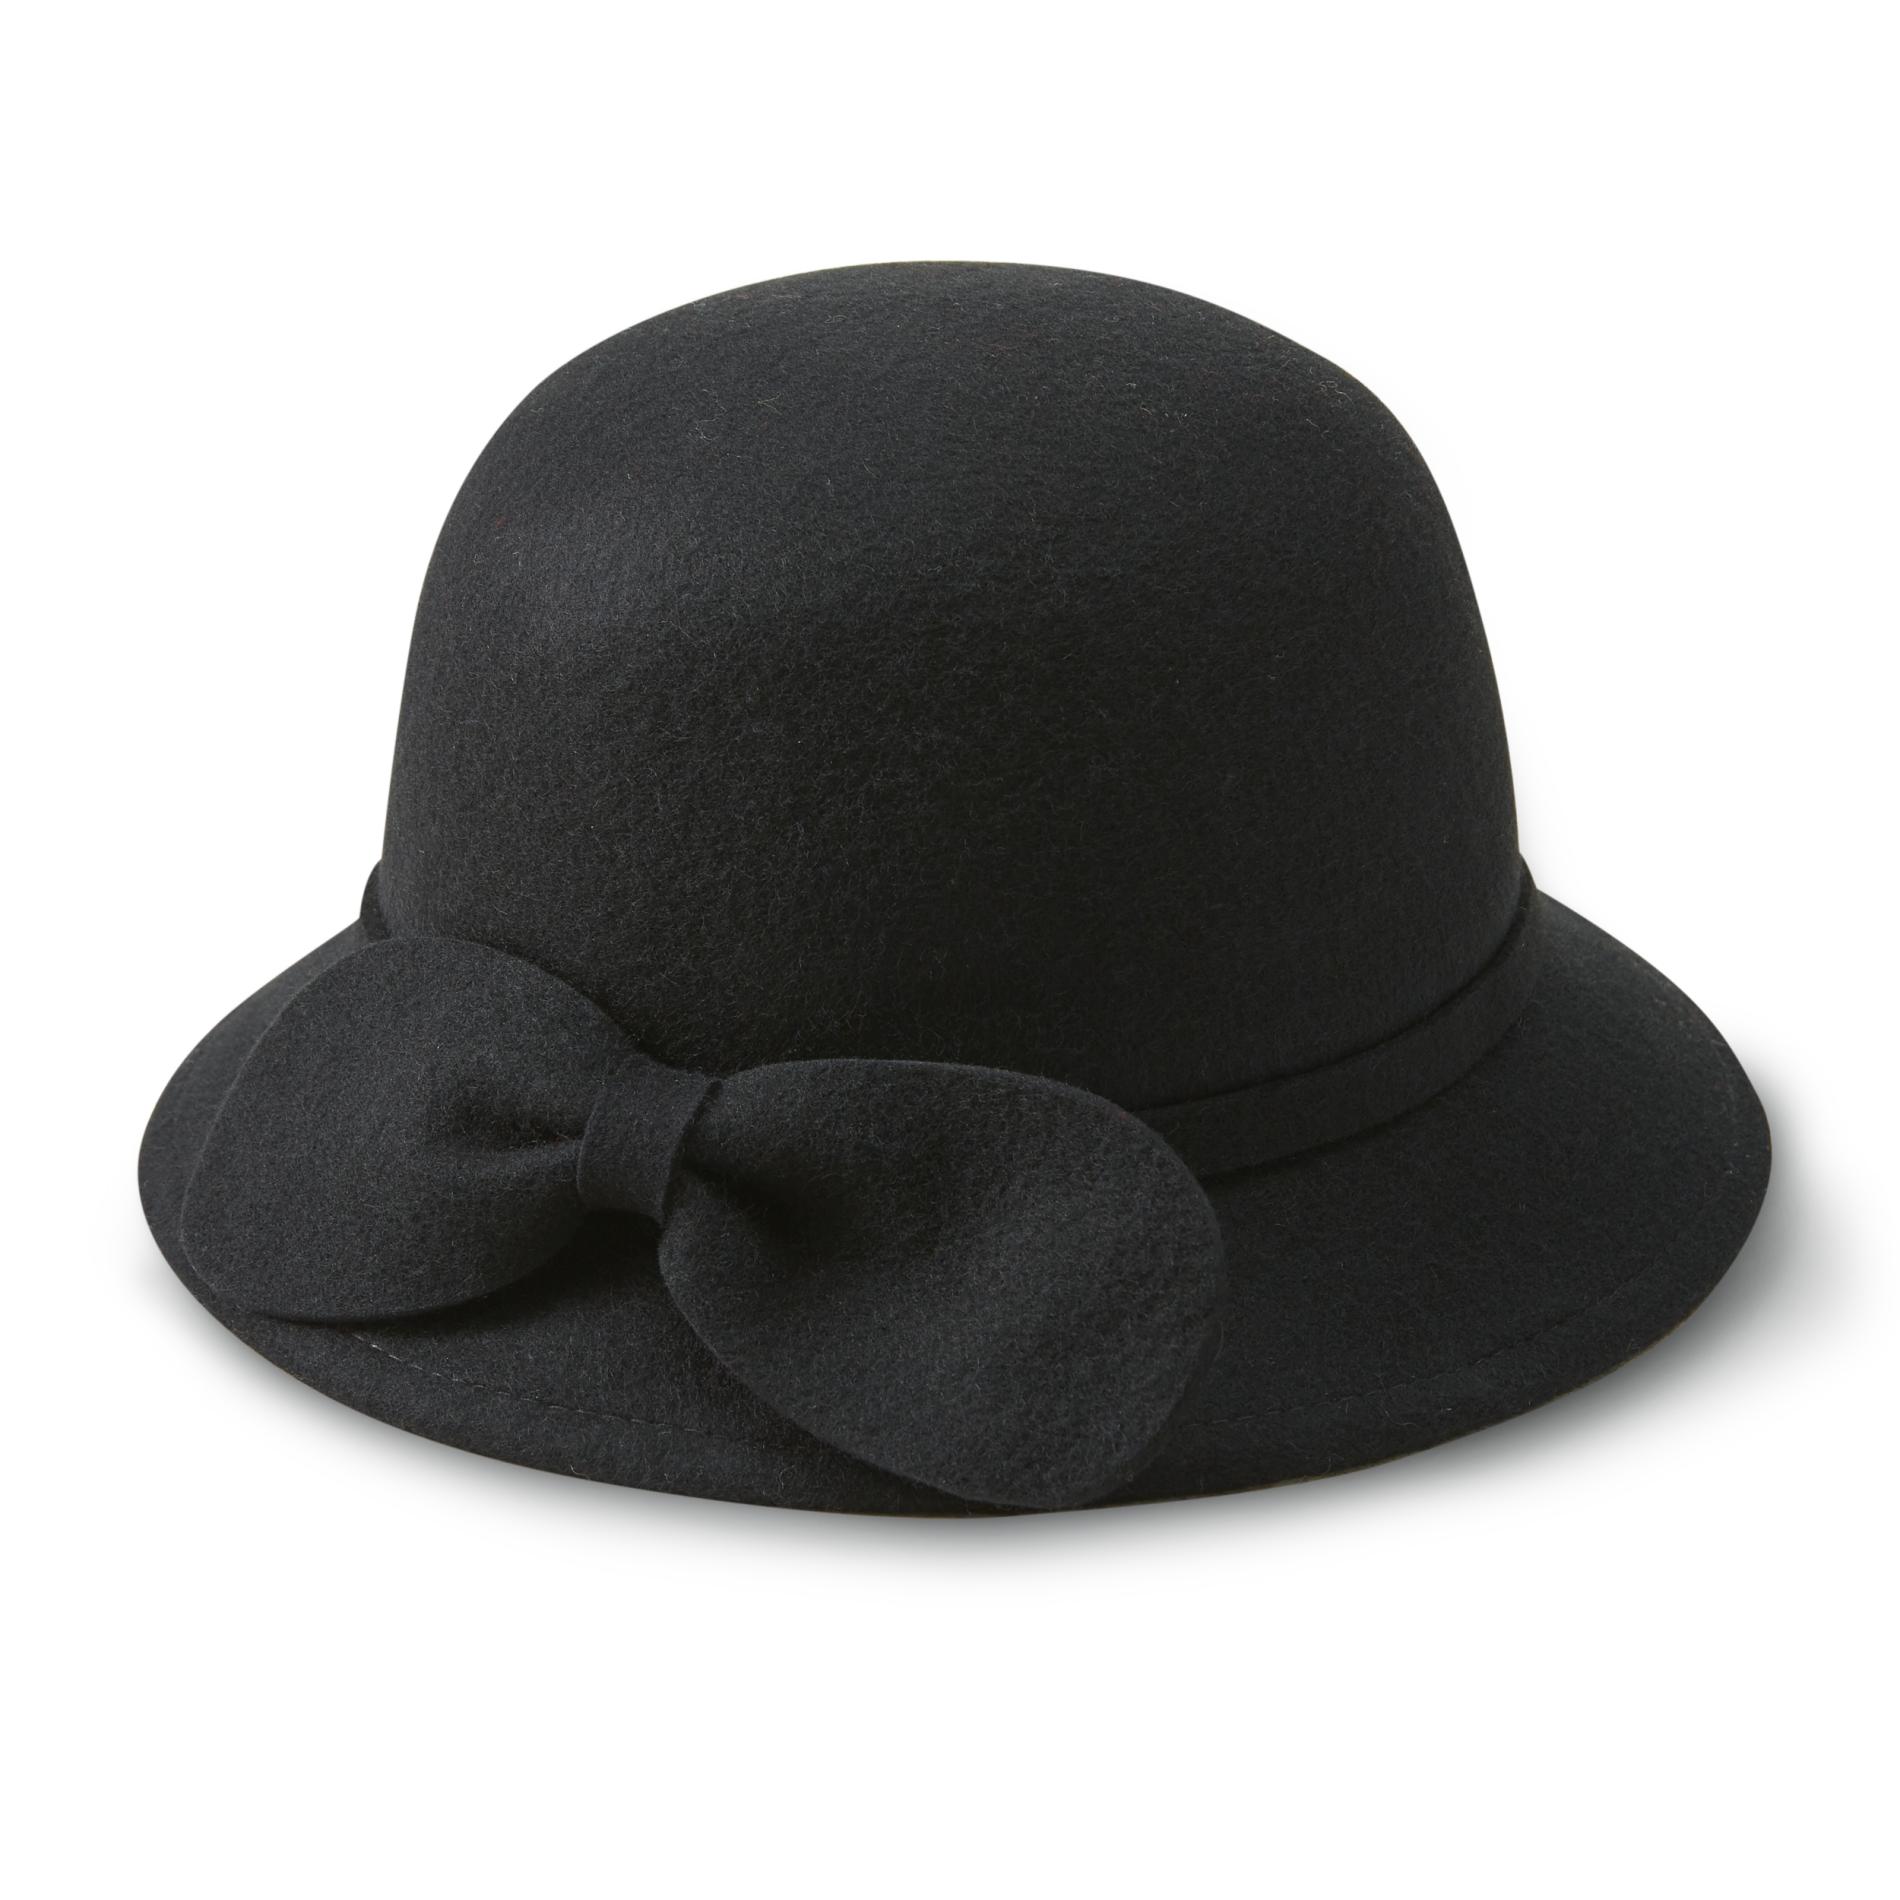 Women's Wool Felt Cloche Hat